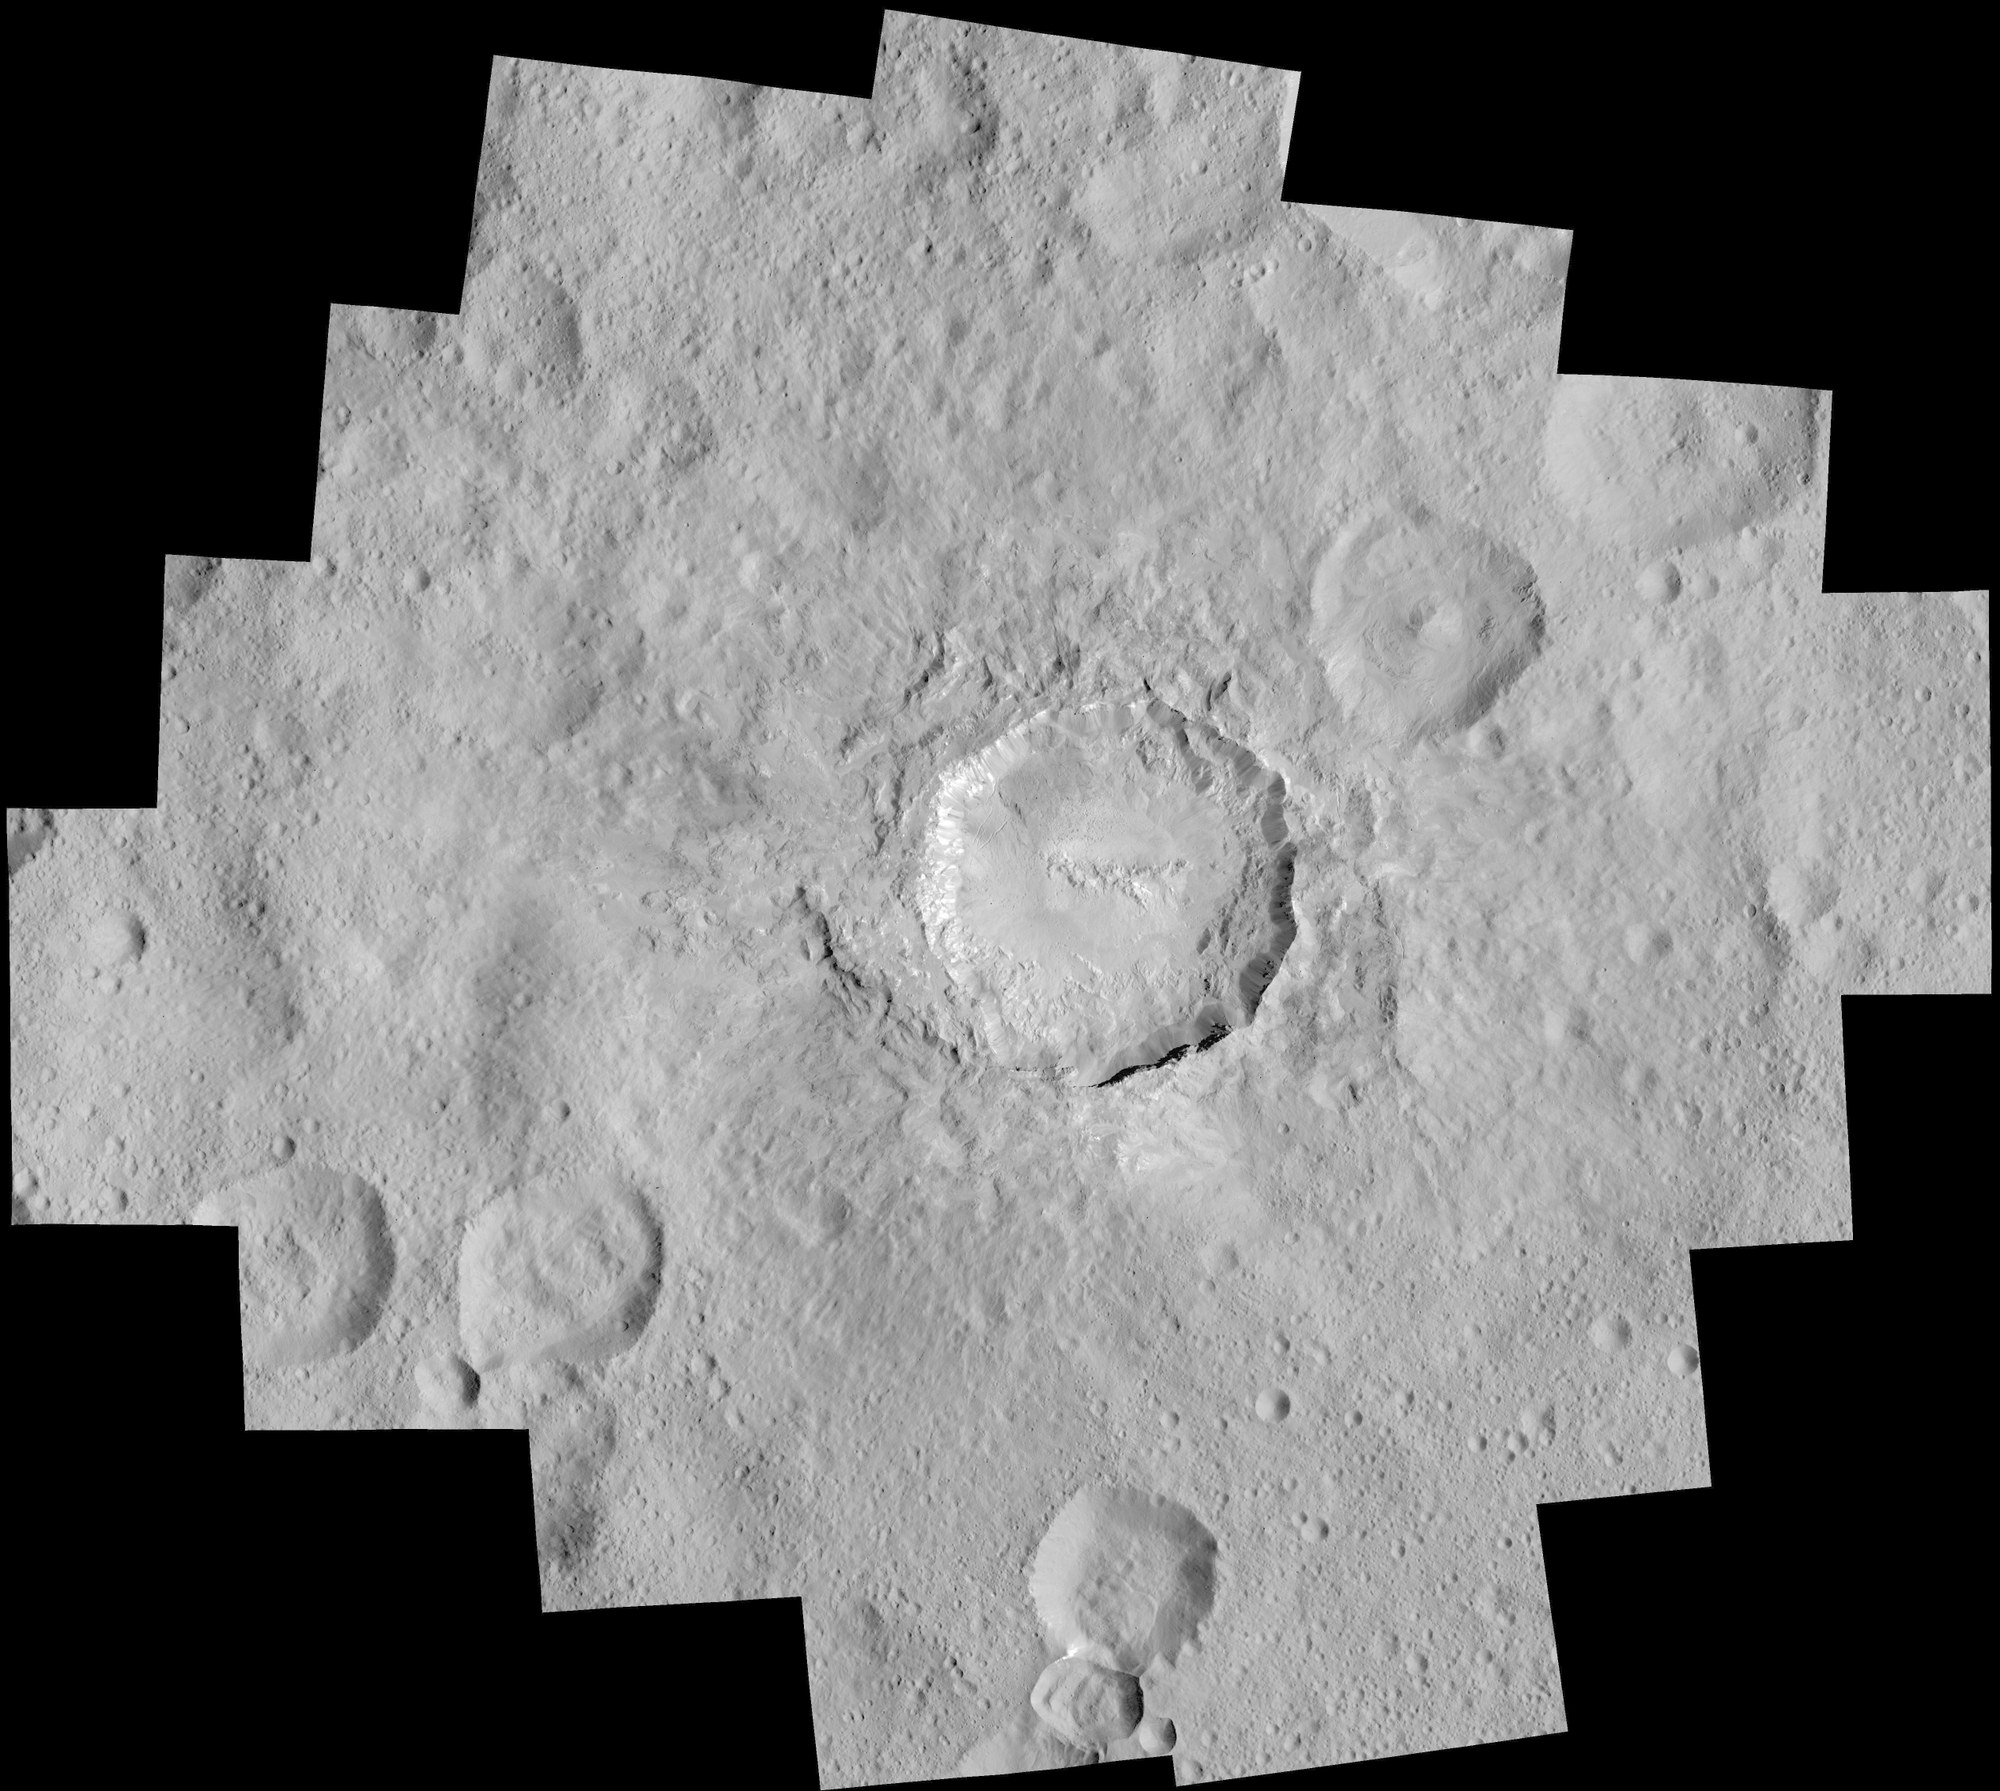 Der Krater Haulani auf Ceres